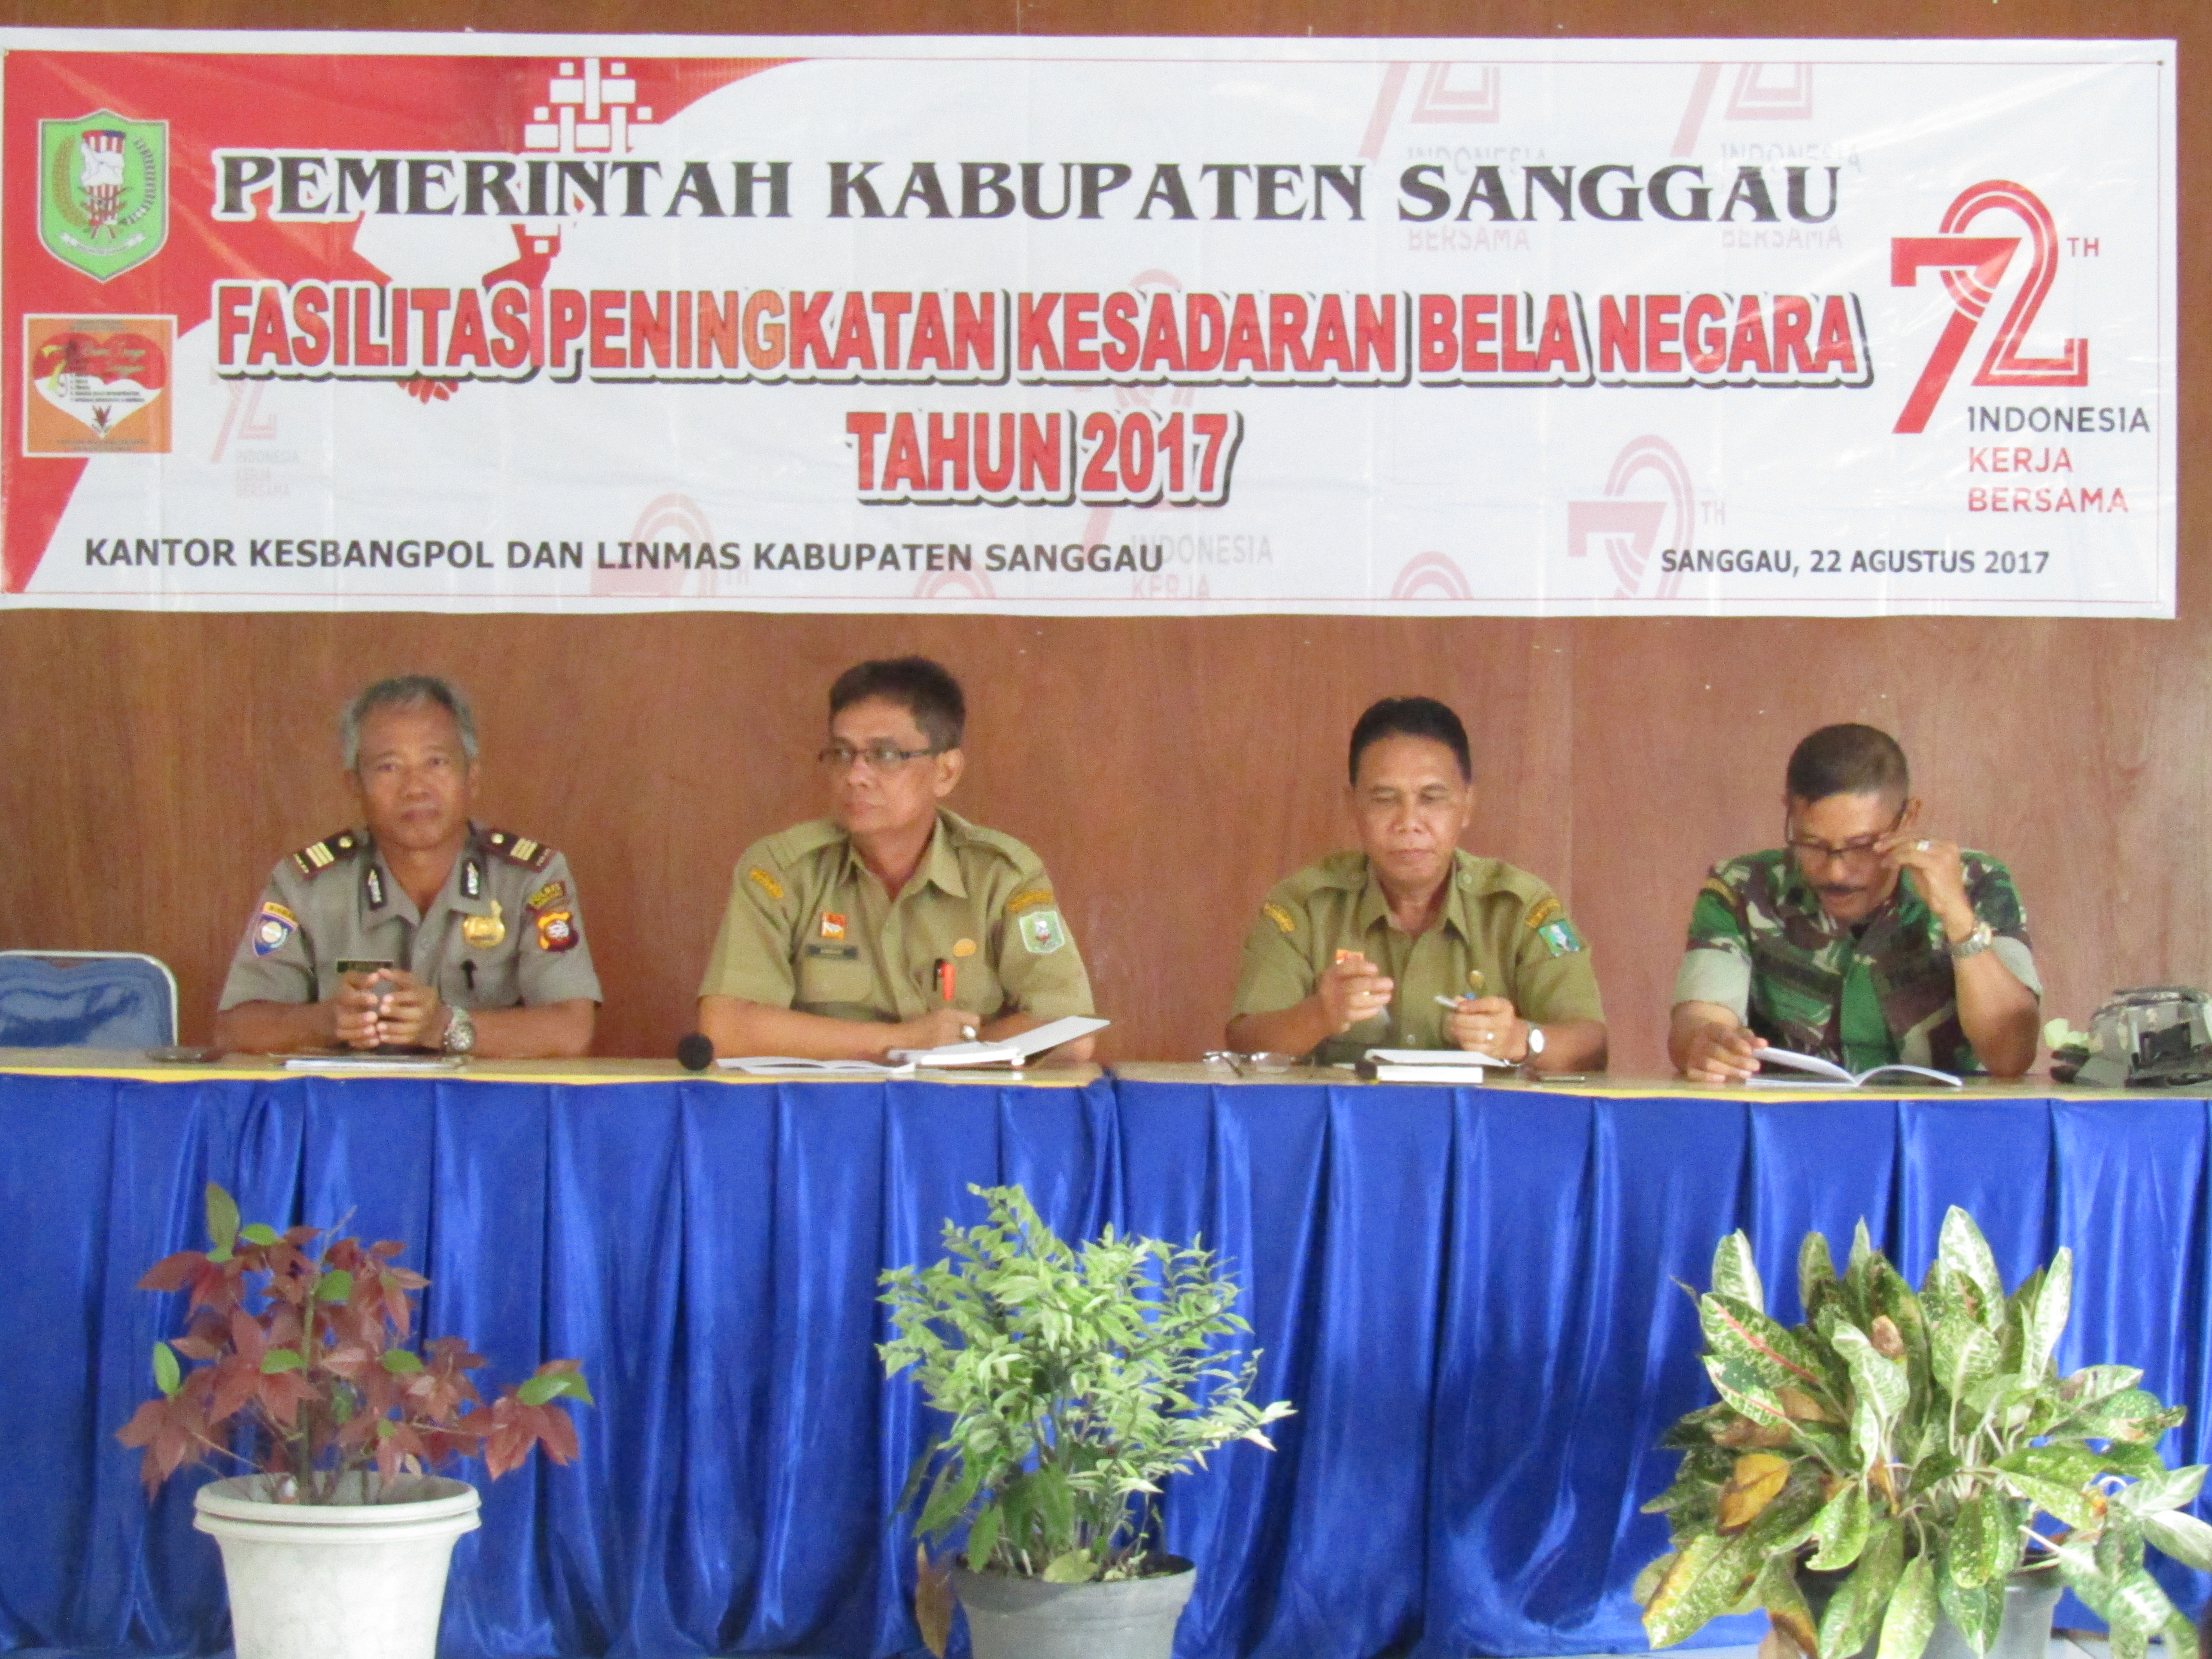 Fasilitasi Peningkatan Kesadaran Bela Negara di Kabupaten Sanggau Tahun 2017